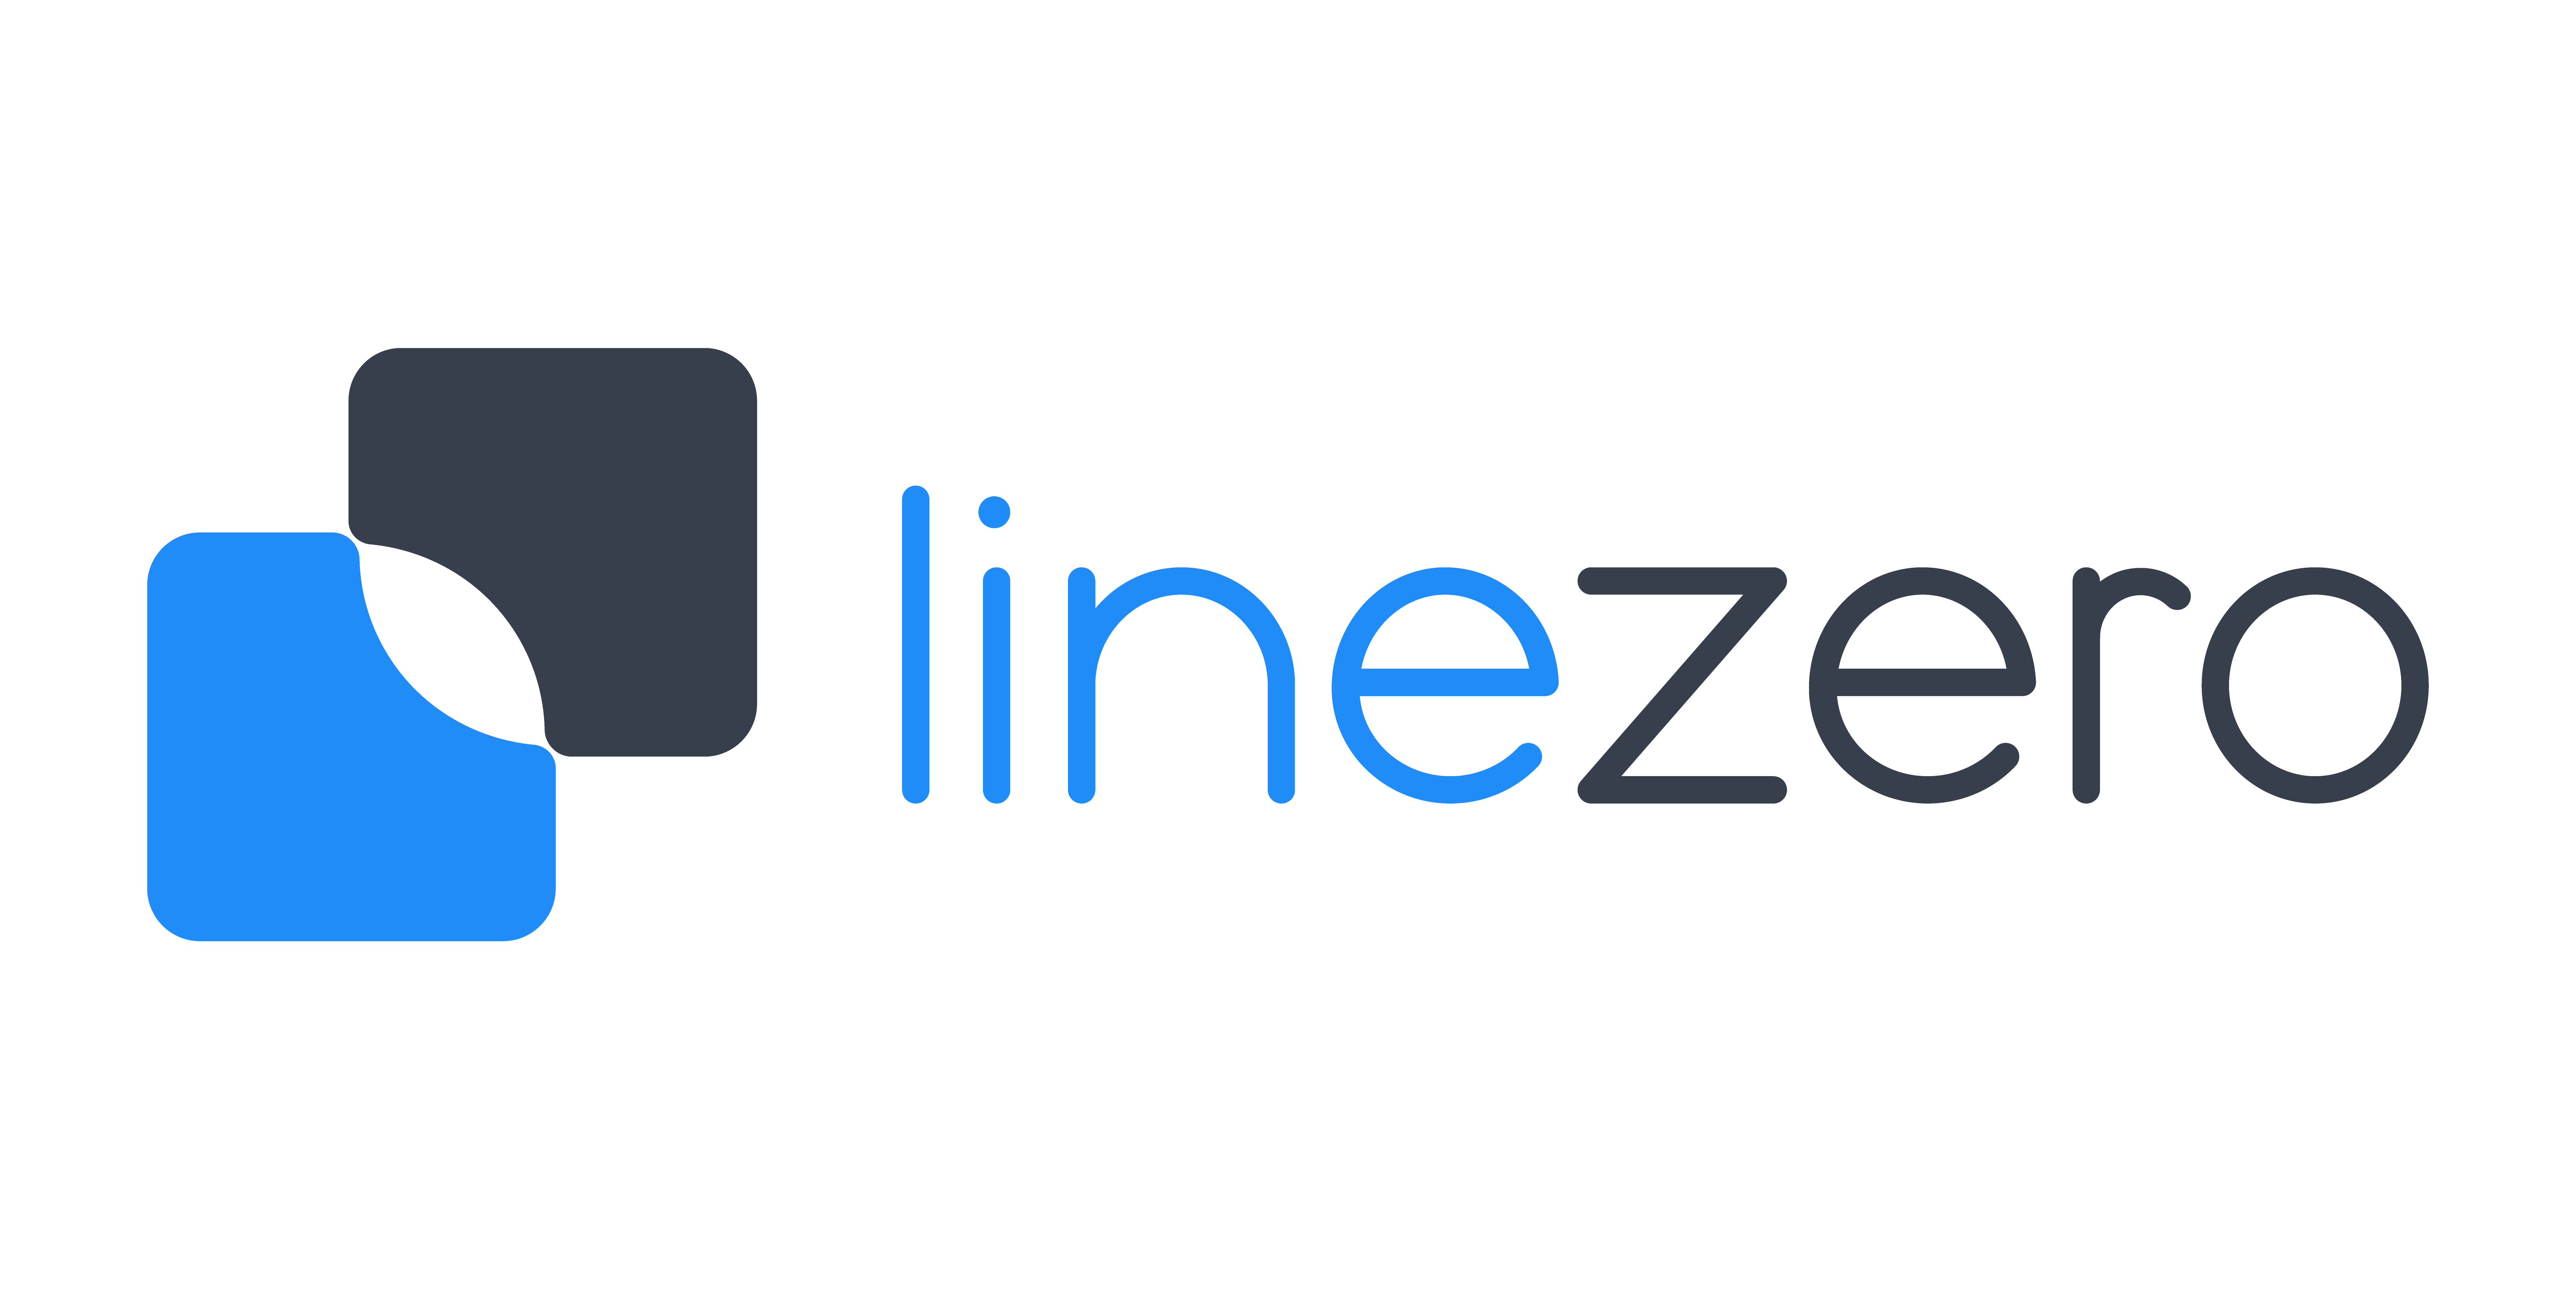 LineZero to Exhibit at NeoCon and Host Exclusive Executive Event